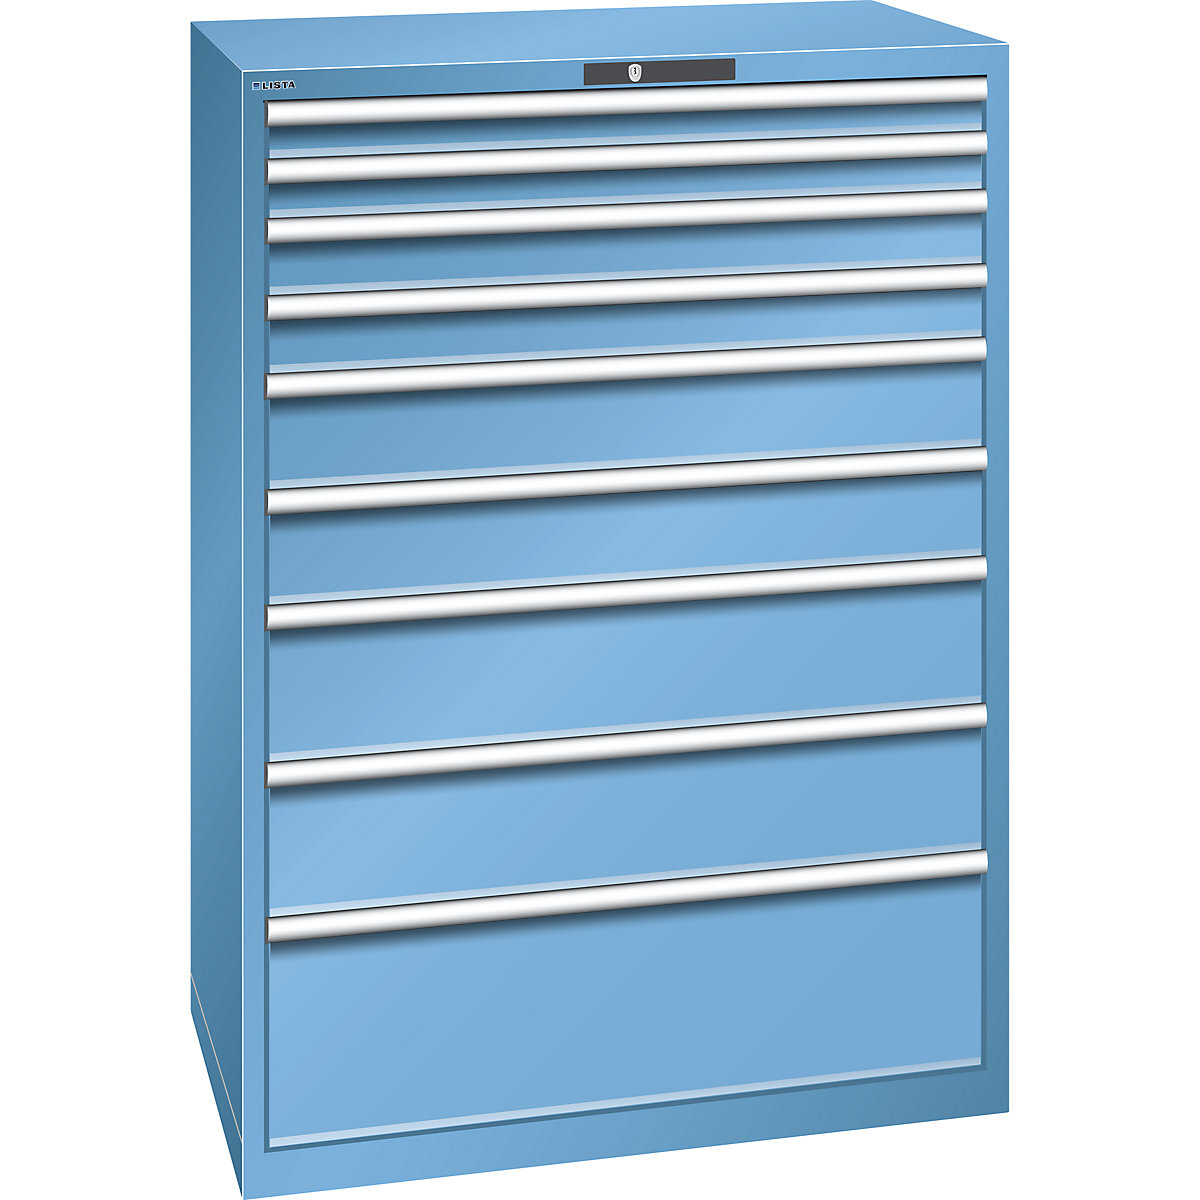 Drawer cupboard, sheet steel – LISTA, HxW 1450 x 1023 mm, 9 drawers, max. load 200 kg, light blue-16